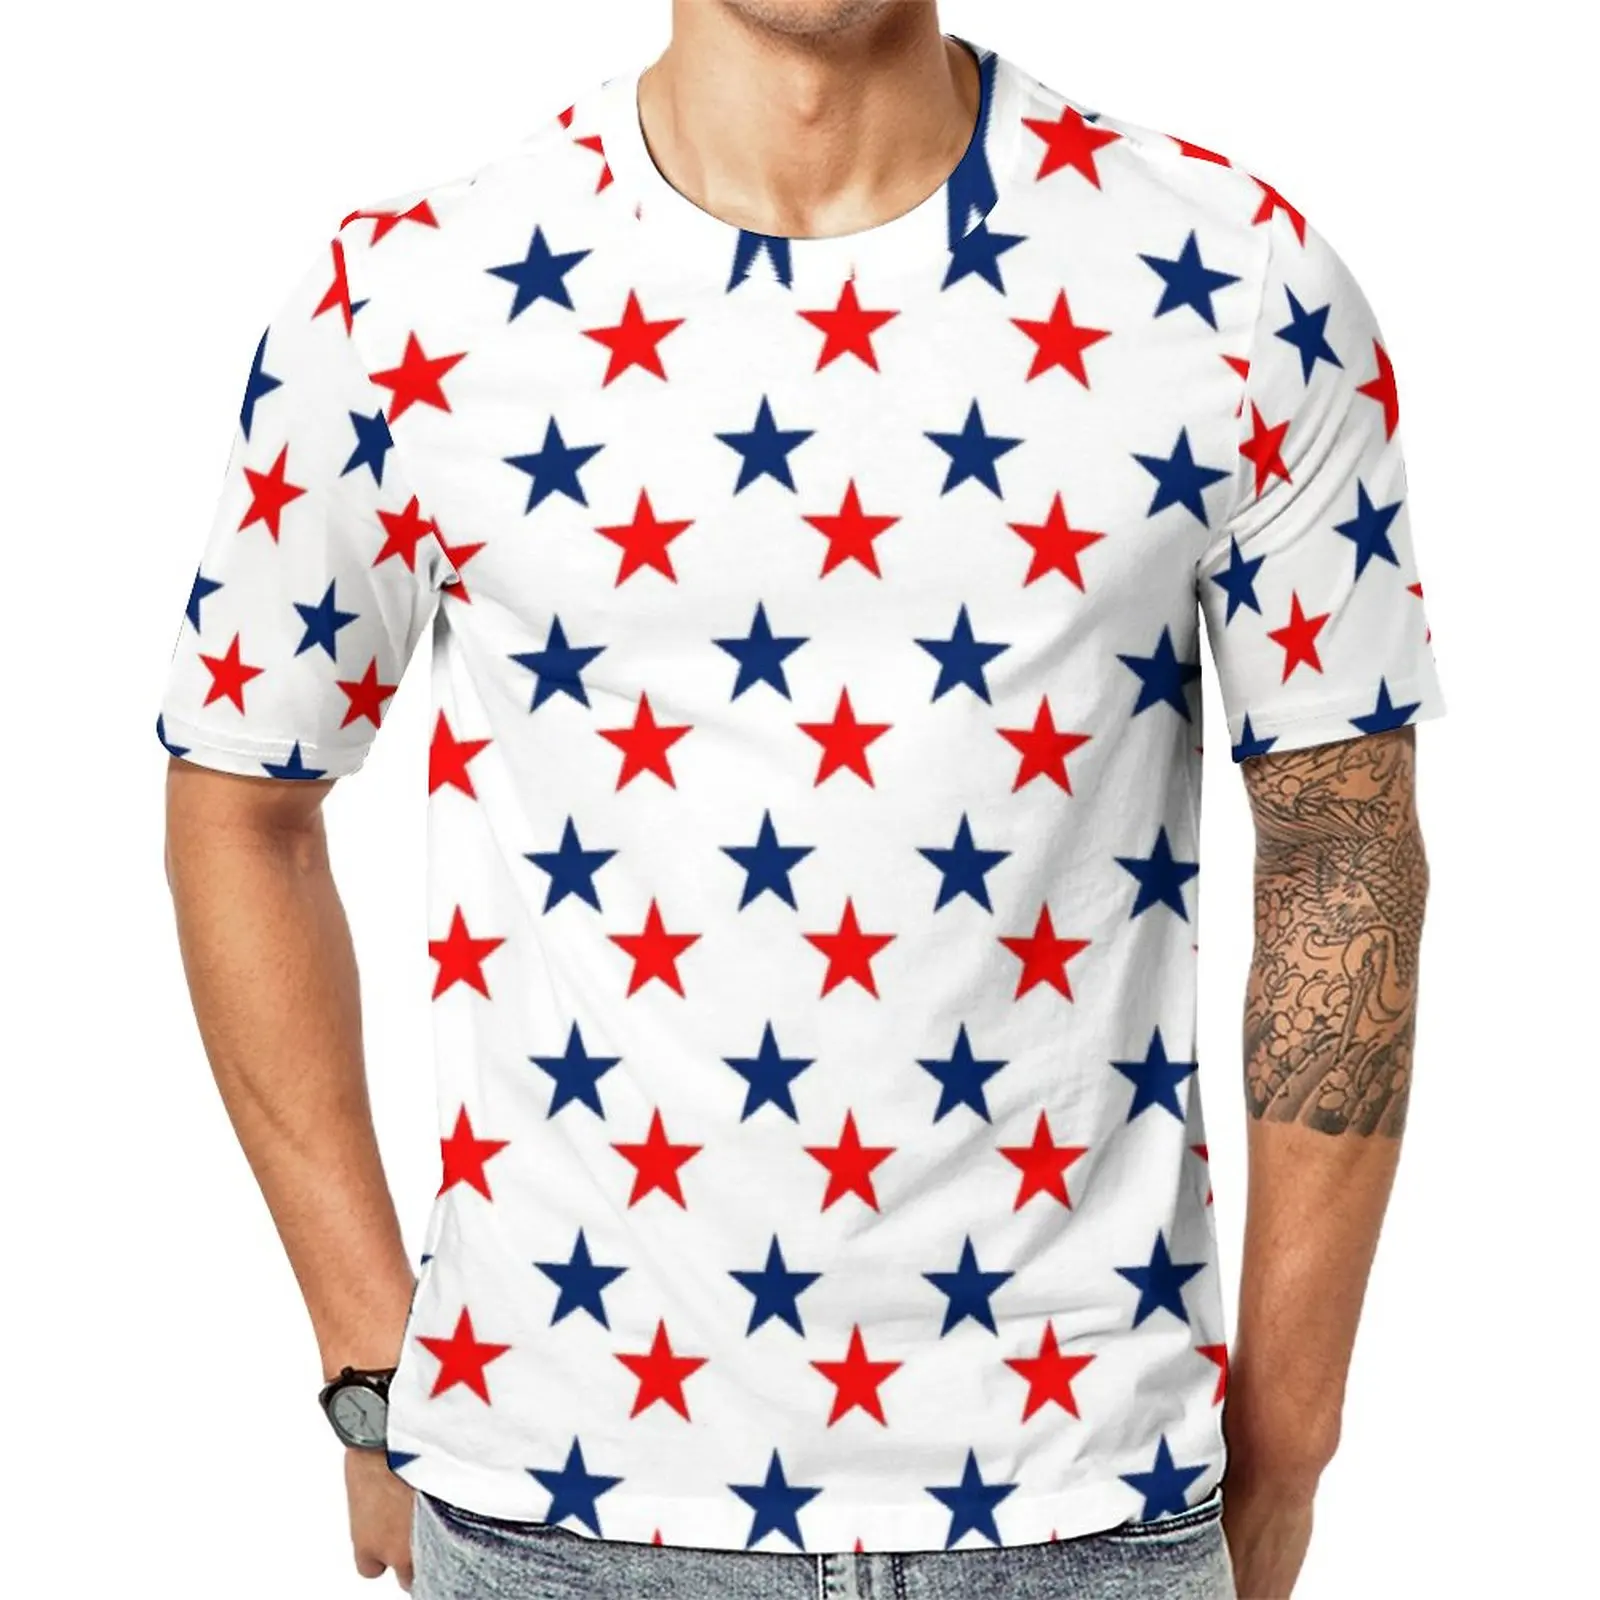 

Крутая футболка с американским флагом США, синие красные футболки с принтом звезд, популярные летние футболки с коротким рукавом, женские т...